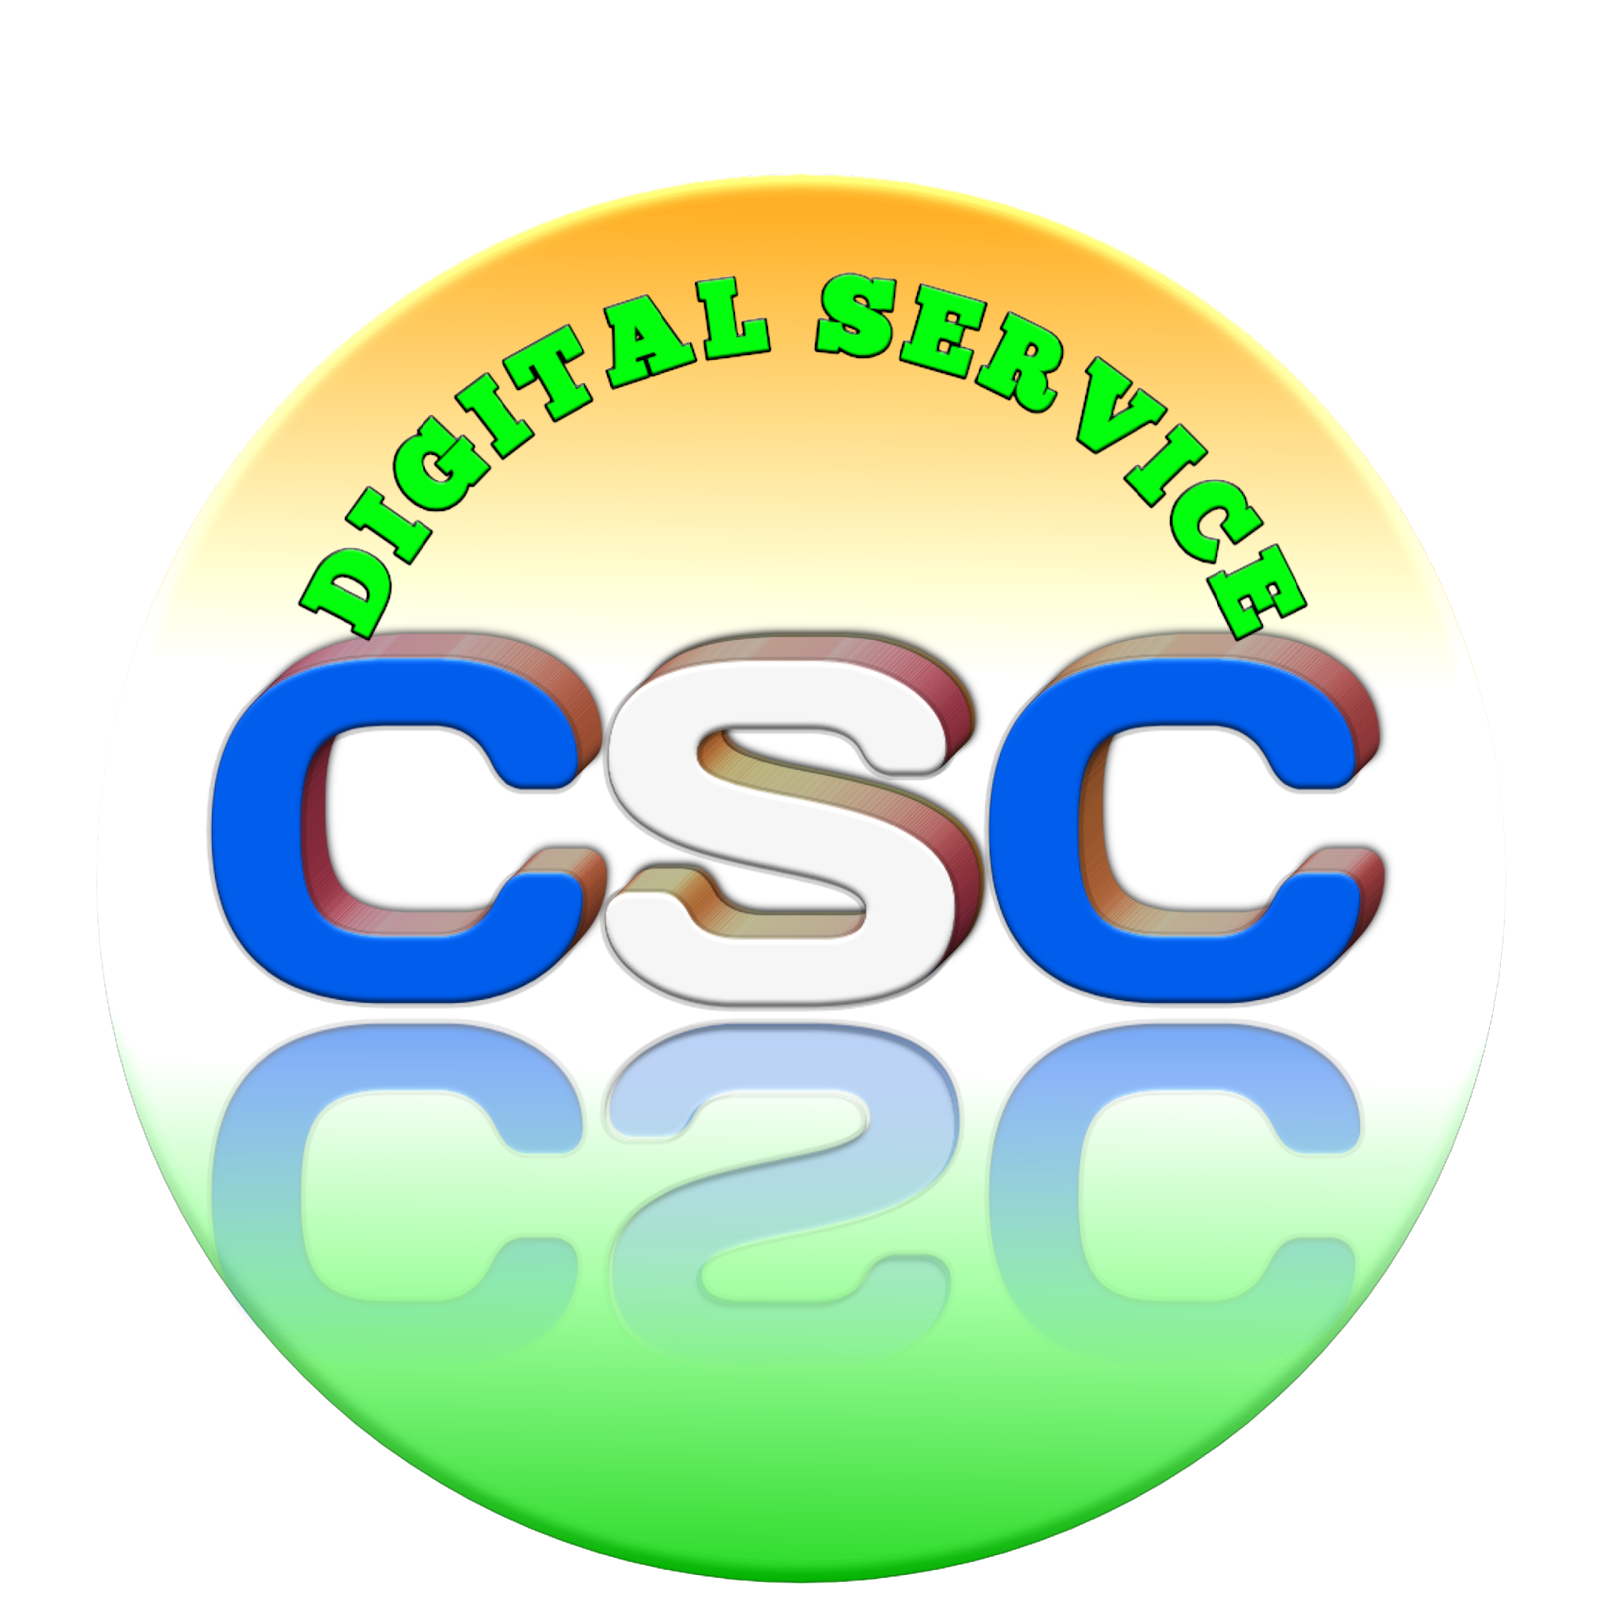 Digital Service CSC